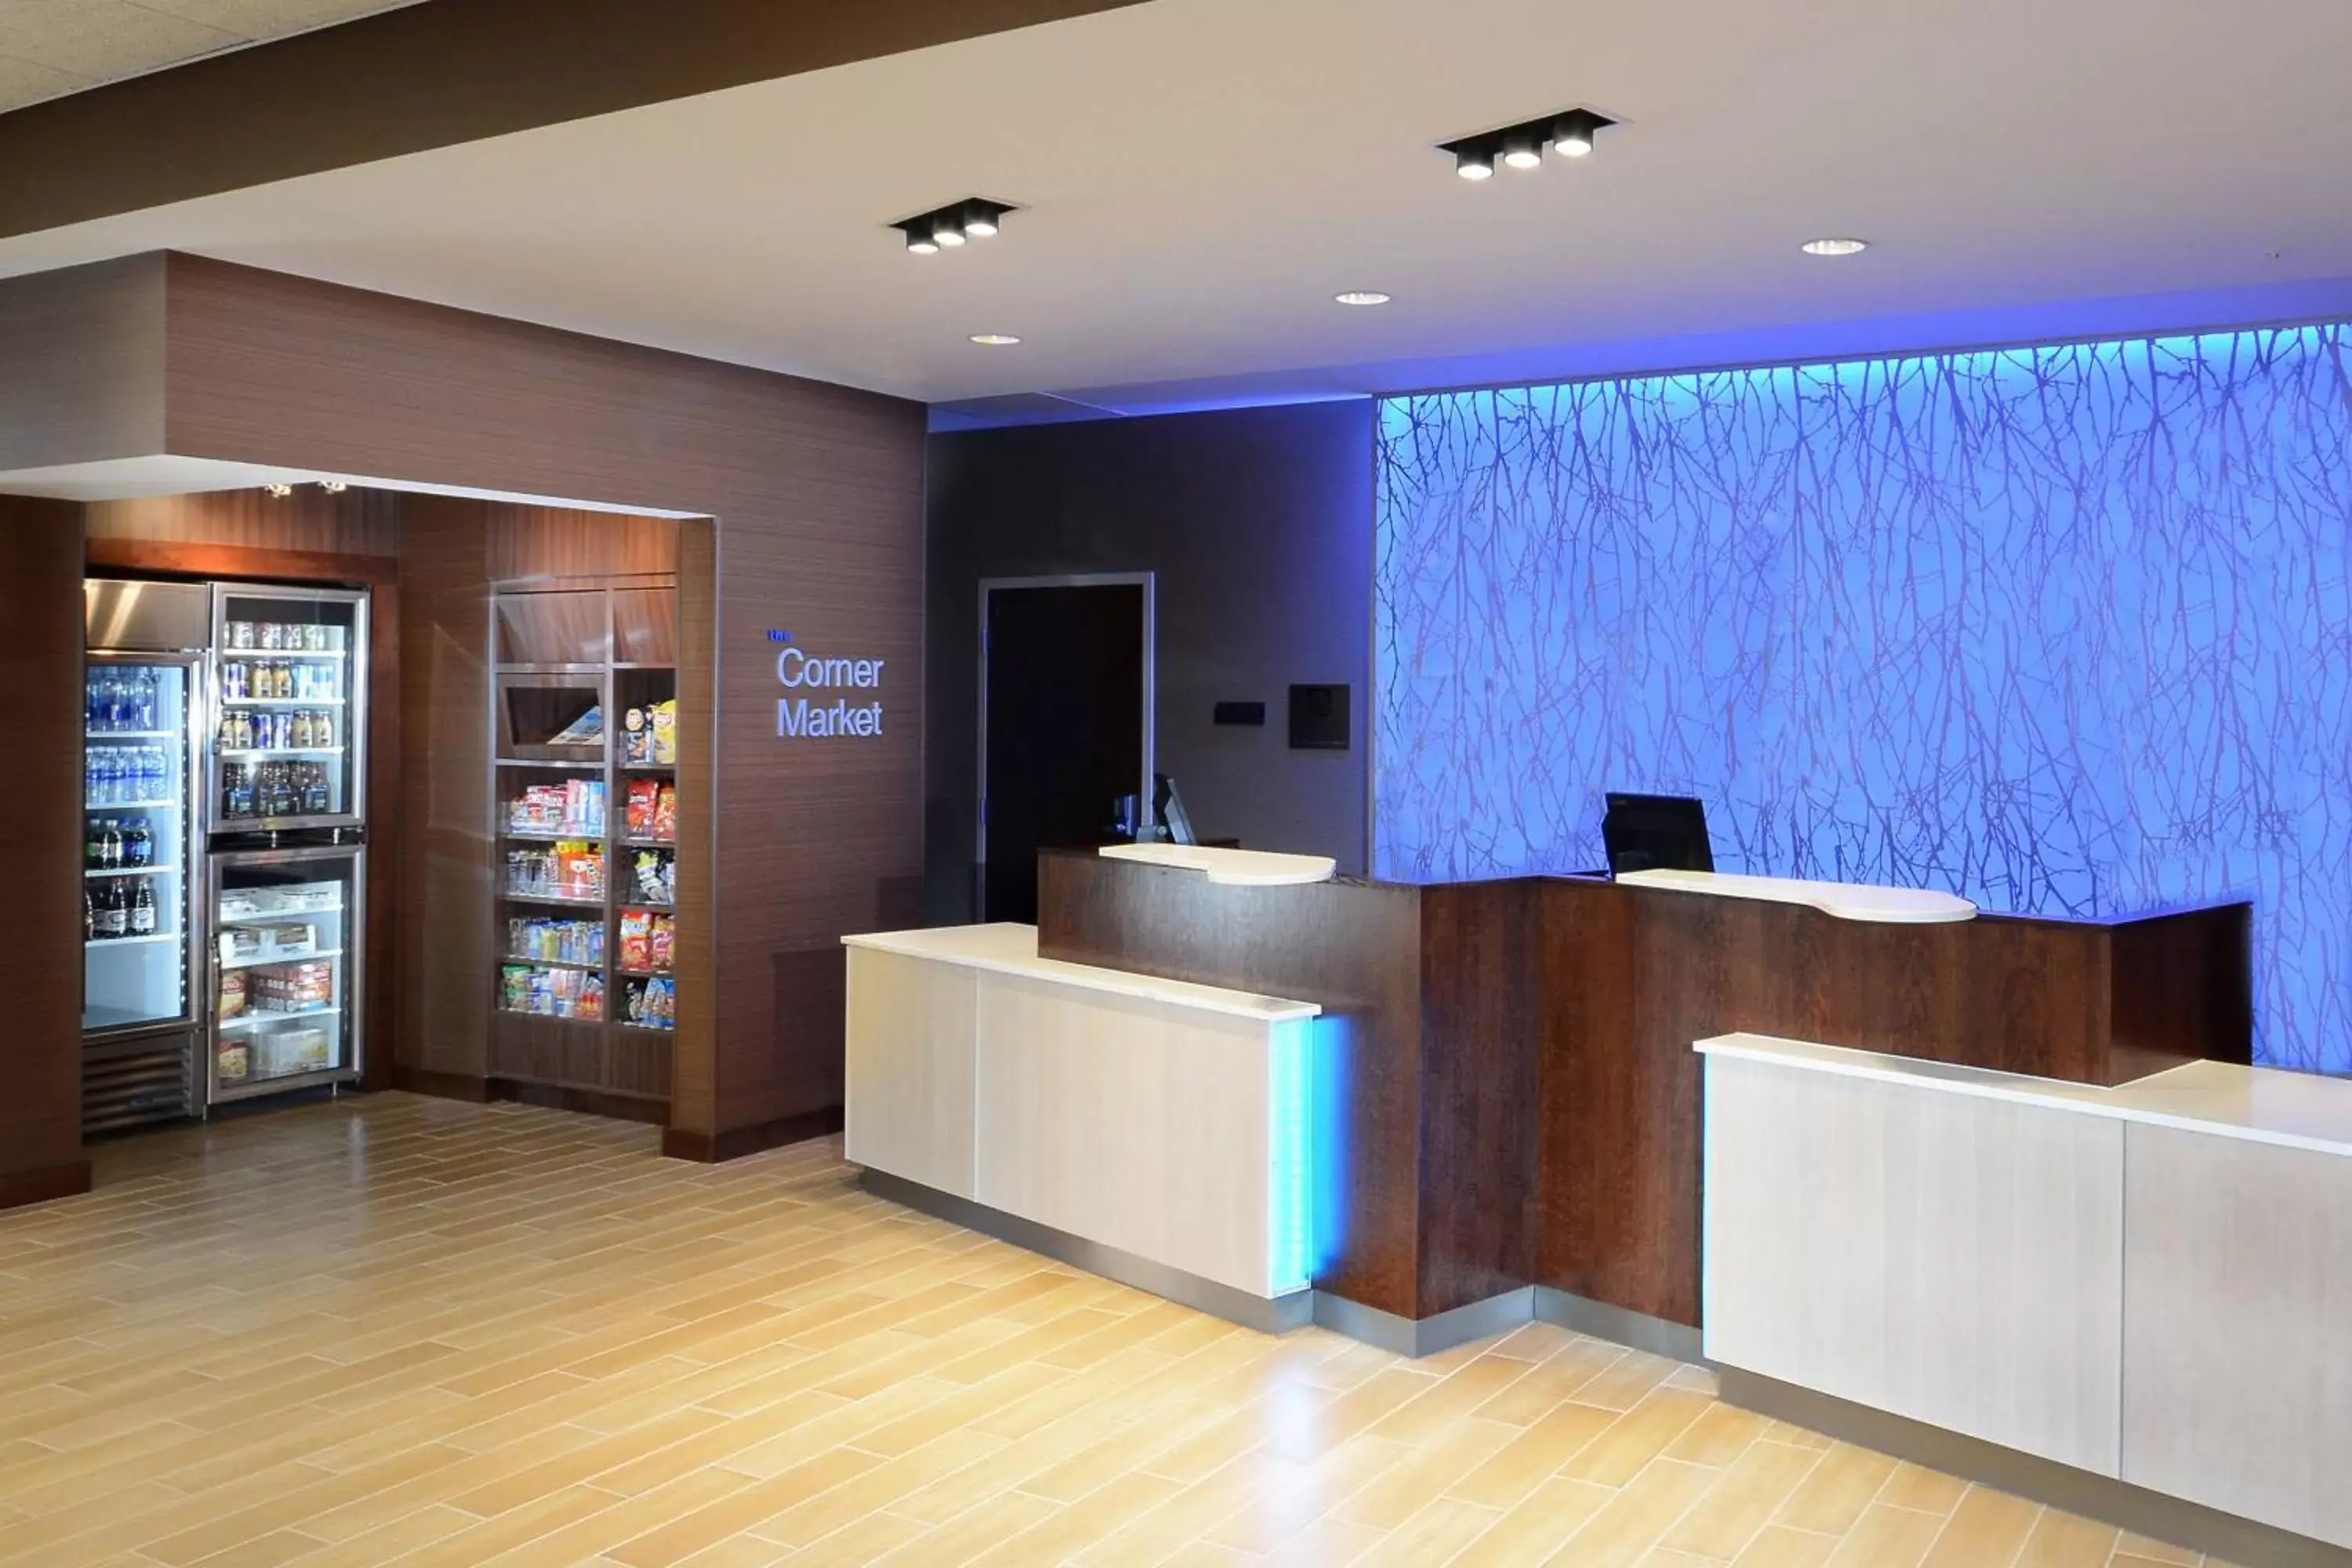 Lobby or reception, Lobby/Reception in Fairfield Inn & Suites by Marriott Raleigh Capital Blvd./I-540